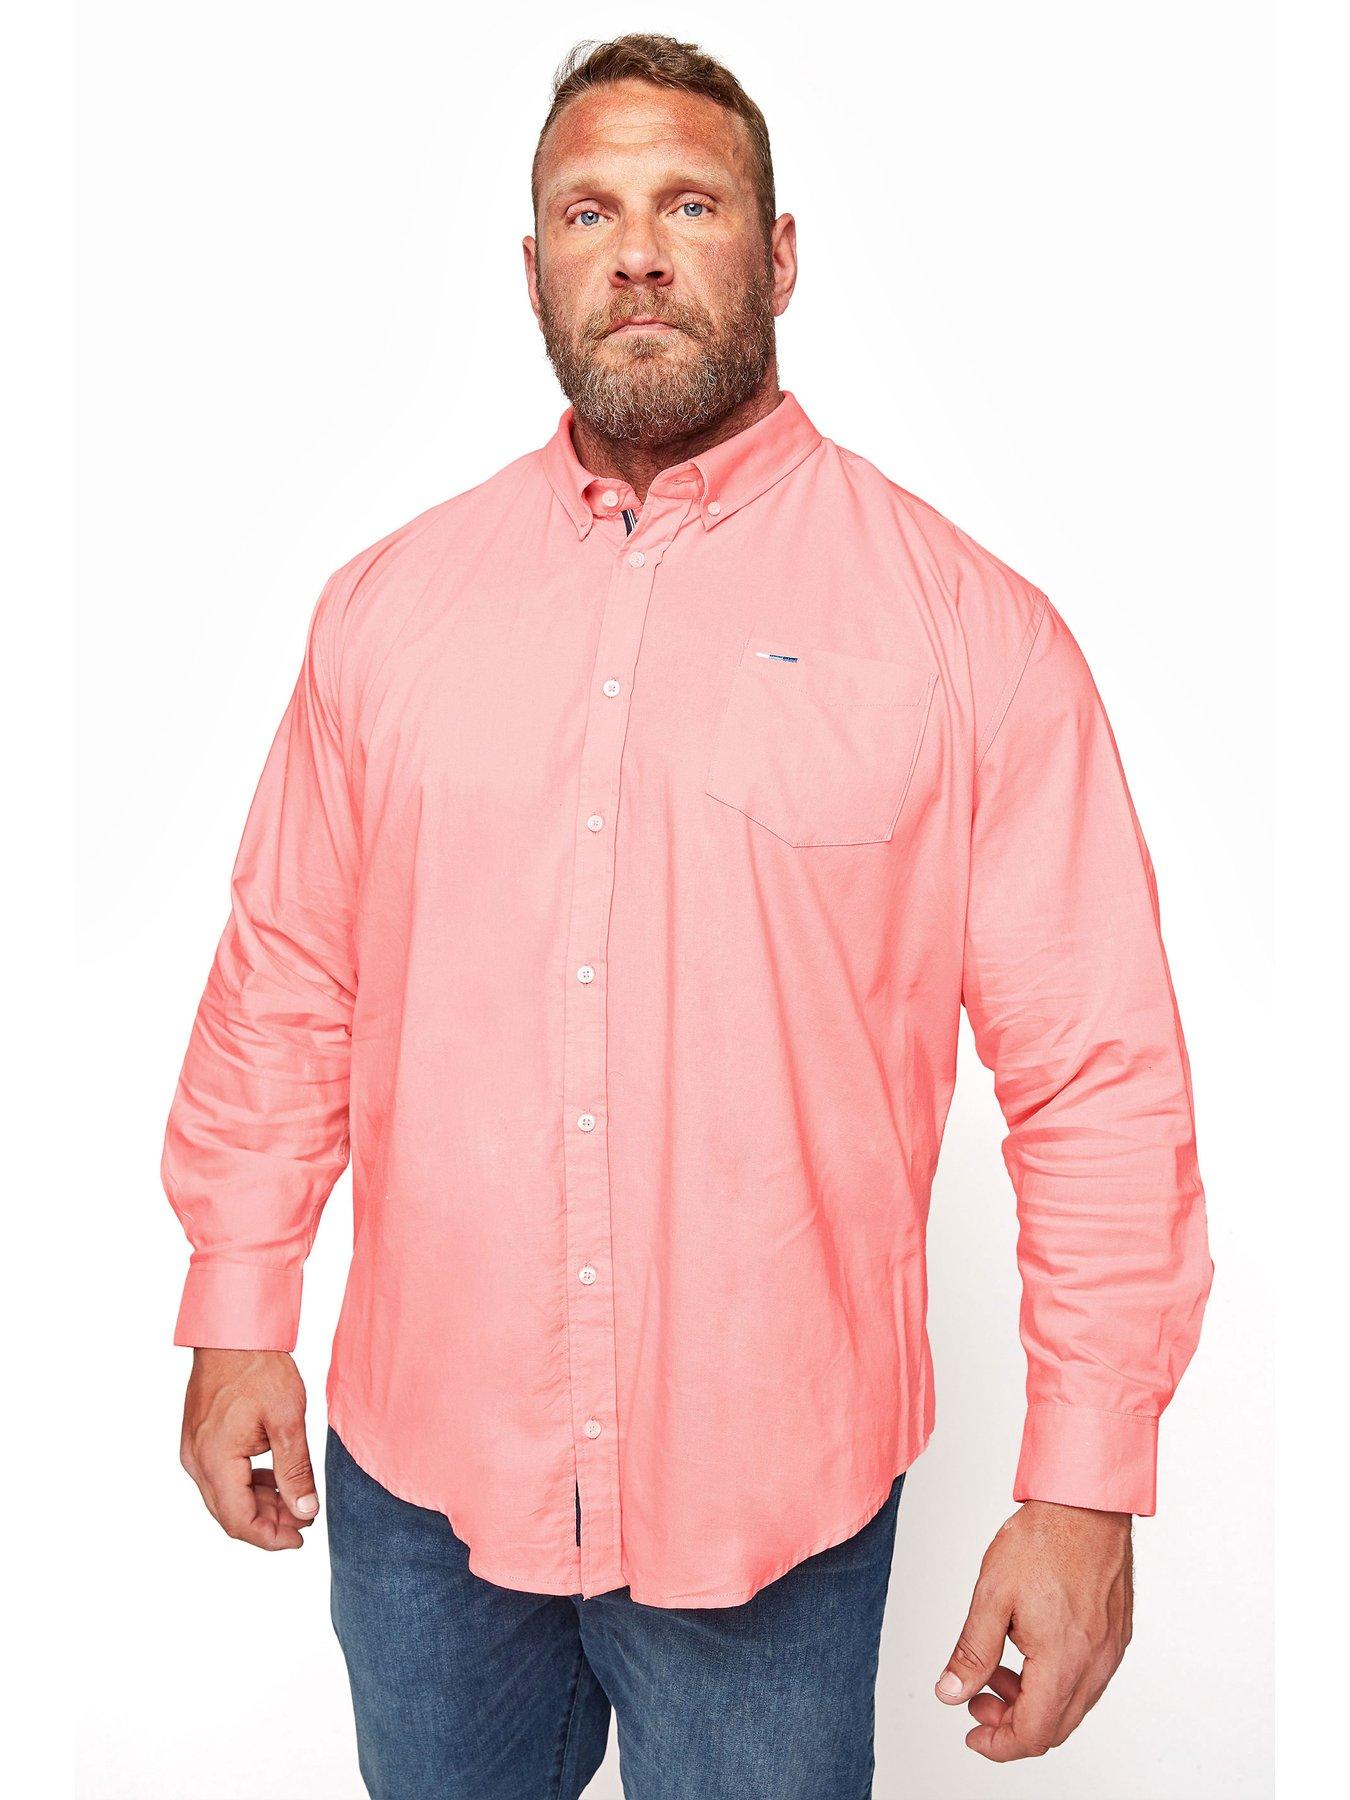 pink button up shirt mens